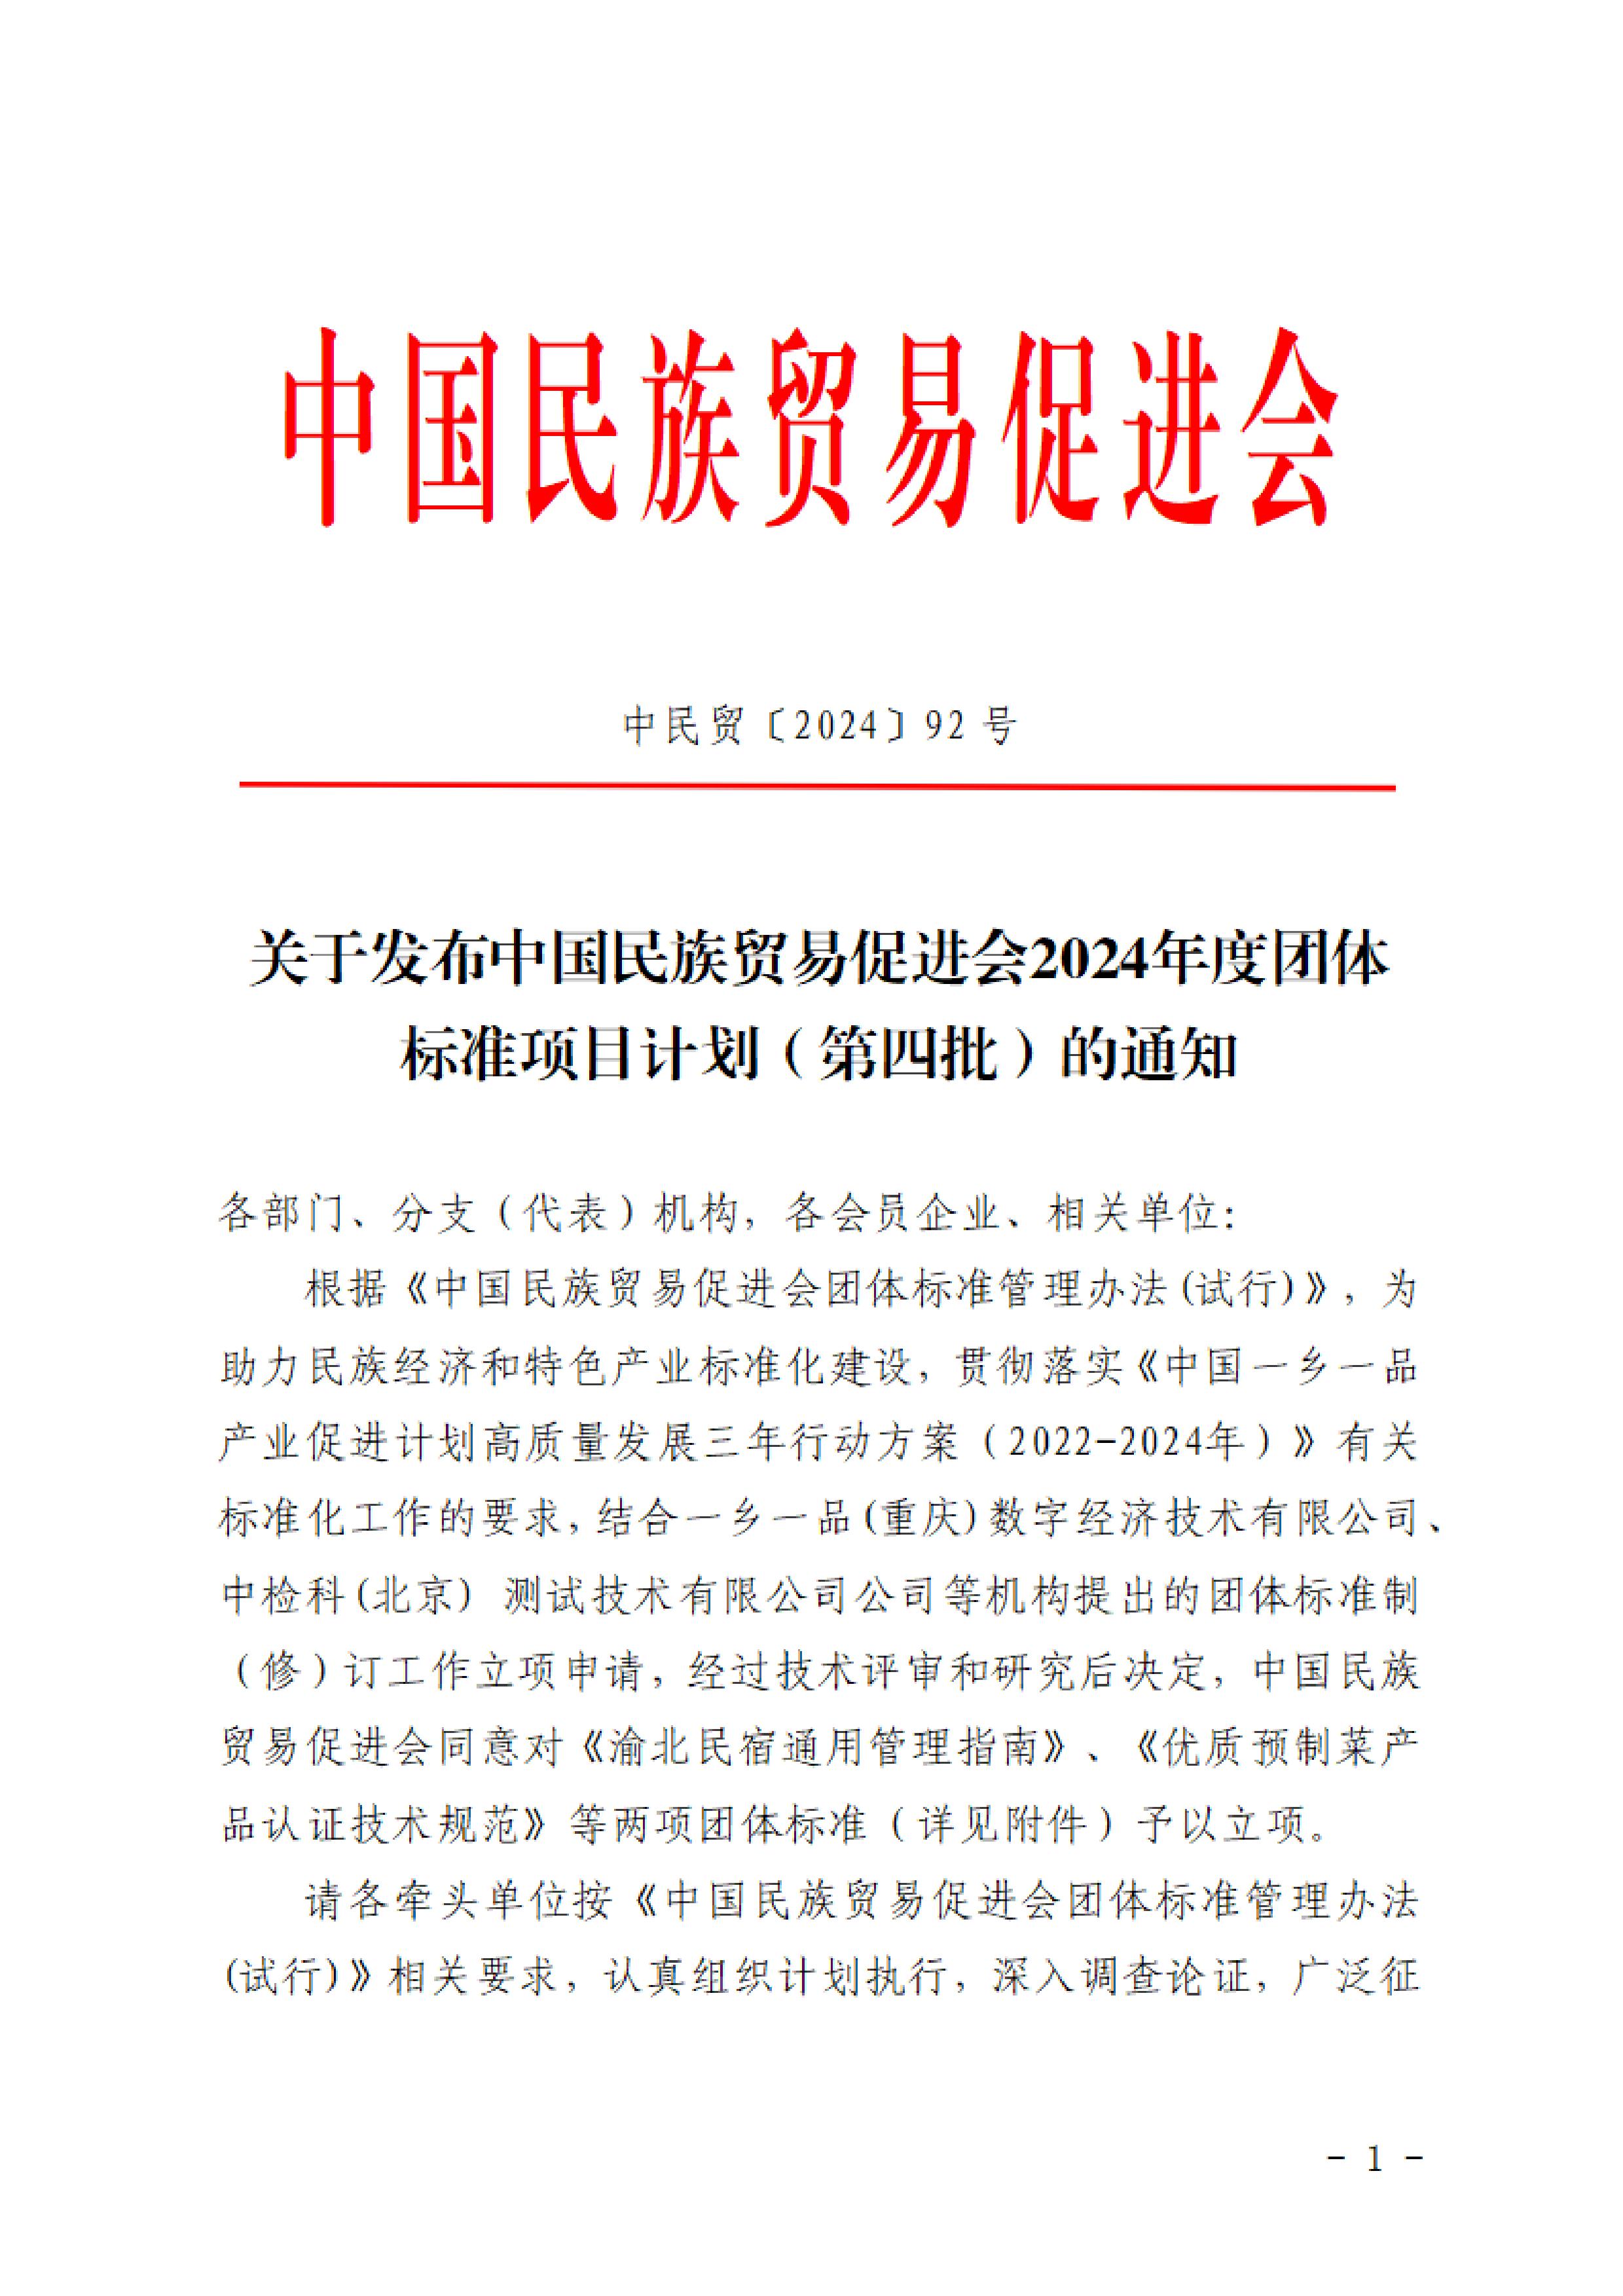 关于发布中国民族贸易促进会2024年度团体标准项目计划（第四批）的通知